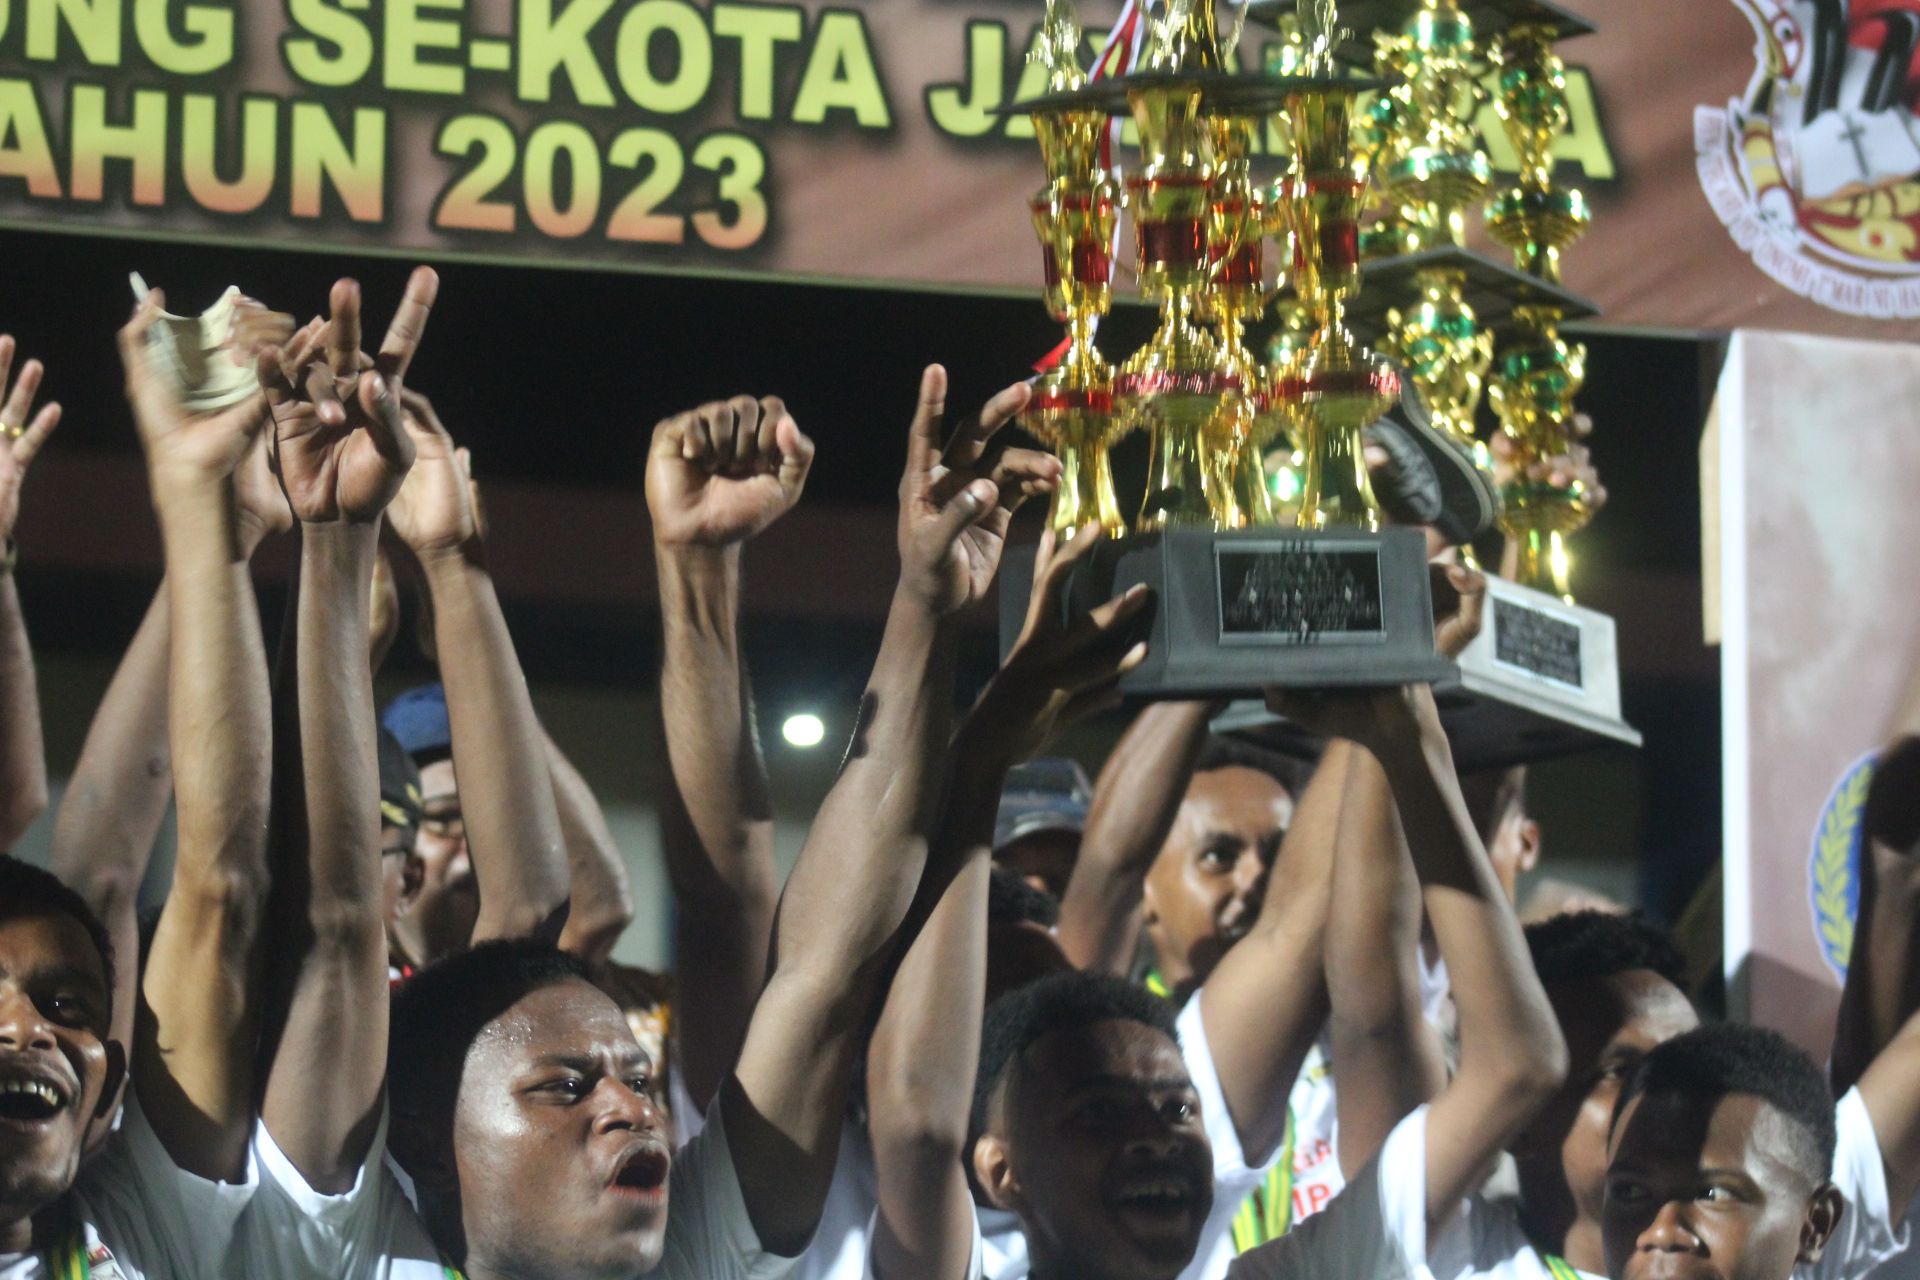 Piala Bergilir Turnamen Sepak Bola Antar Kampung 2023 Se Kota Jayapura yang dimenangkan oleh PS Kayu Batu dari Kampung Kayu Batu